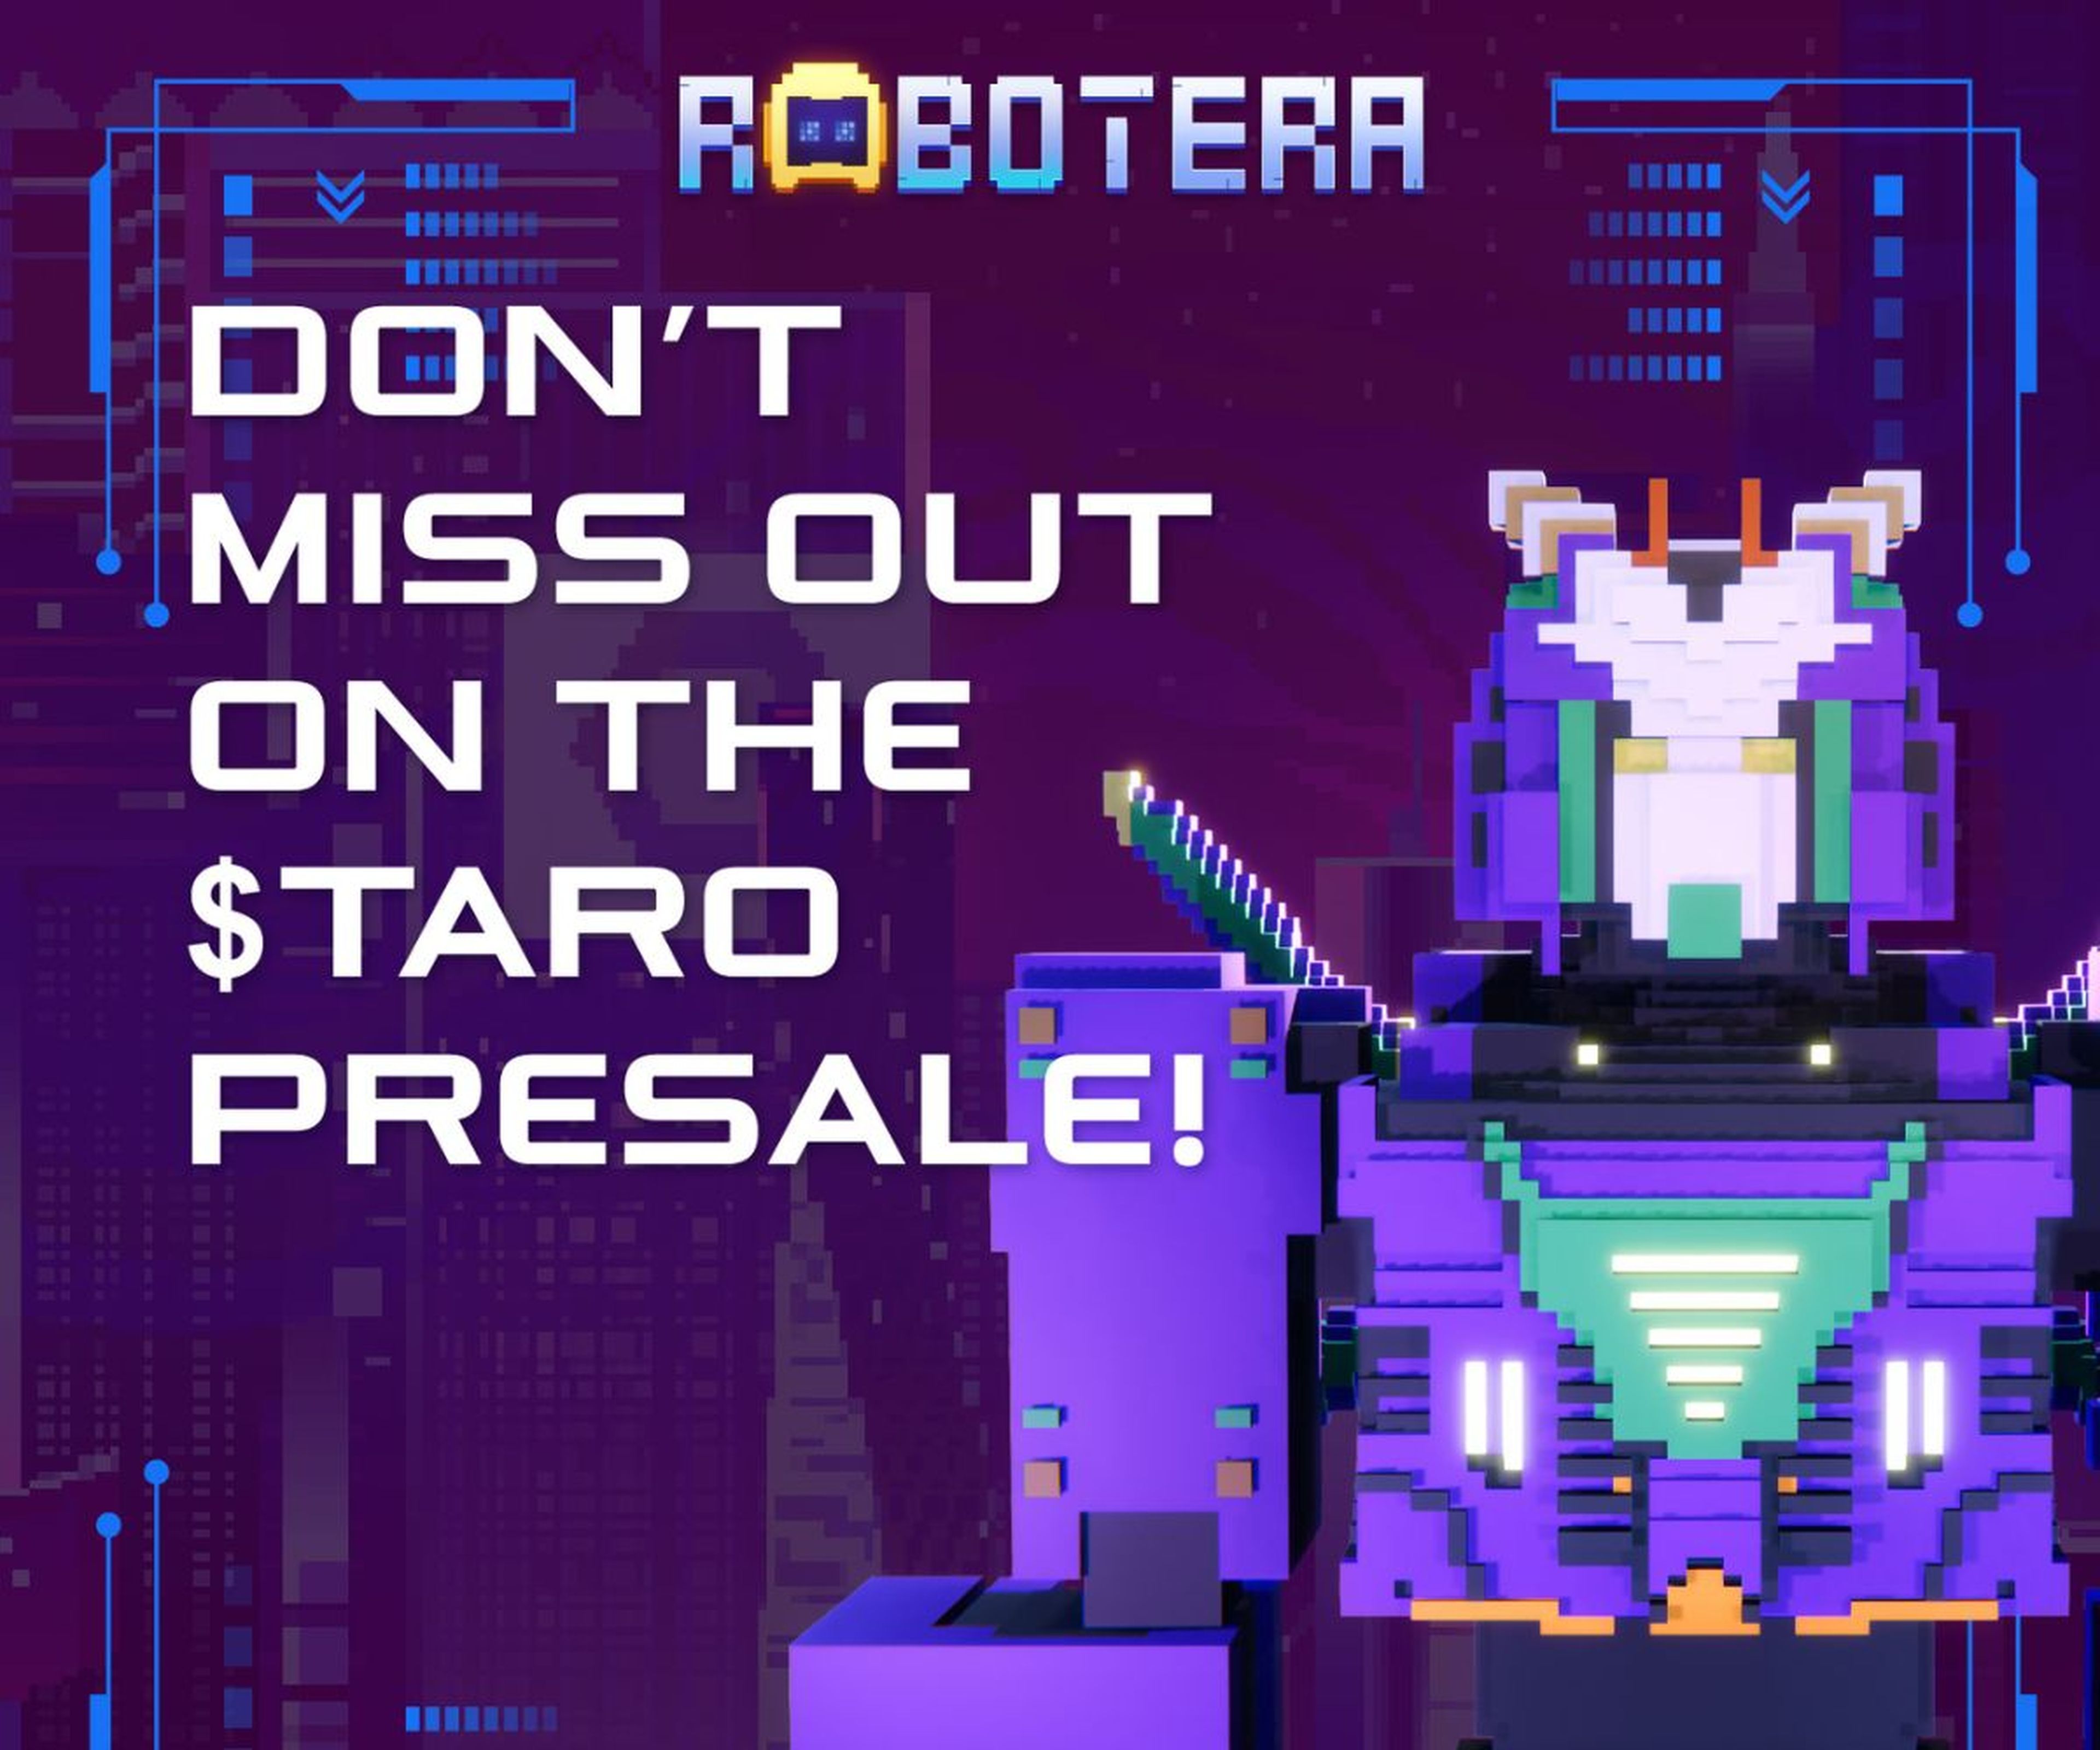 来自 RobotEra 的 Twitter 帐户的图片，他们在其中鼓励您购买 TARO。